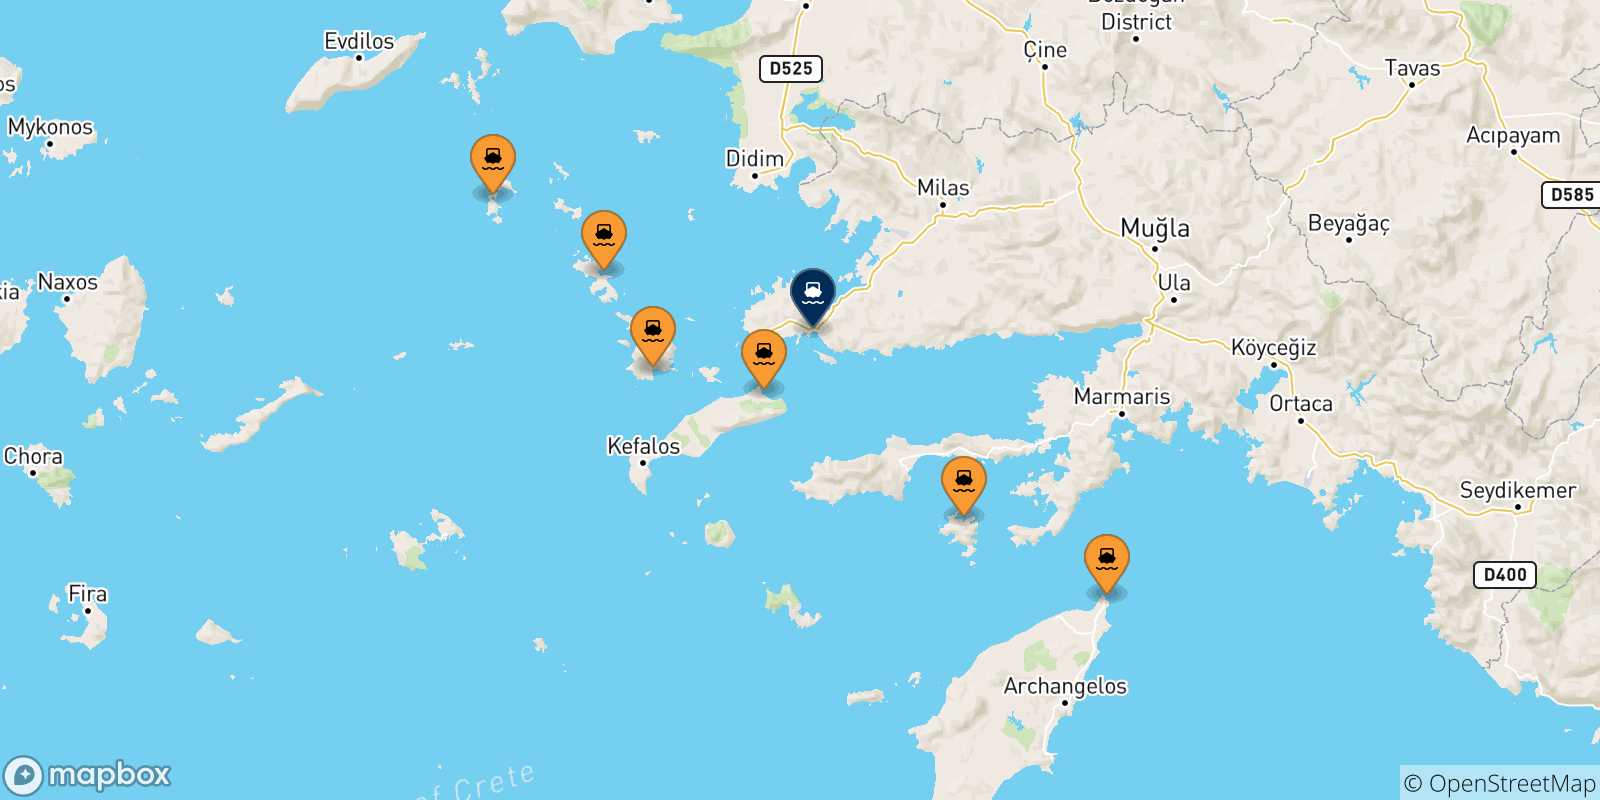 Mappa delle possibili rotte tra la Grecia e Bodrum